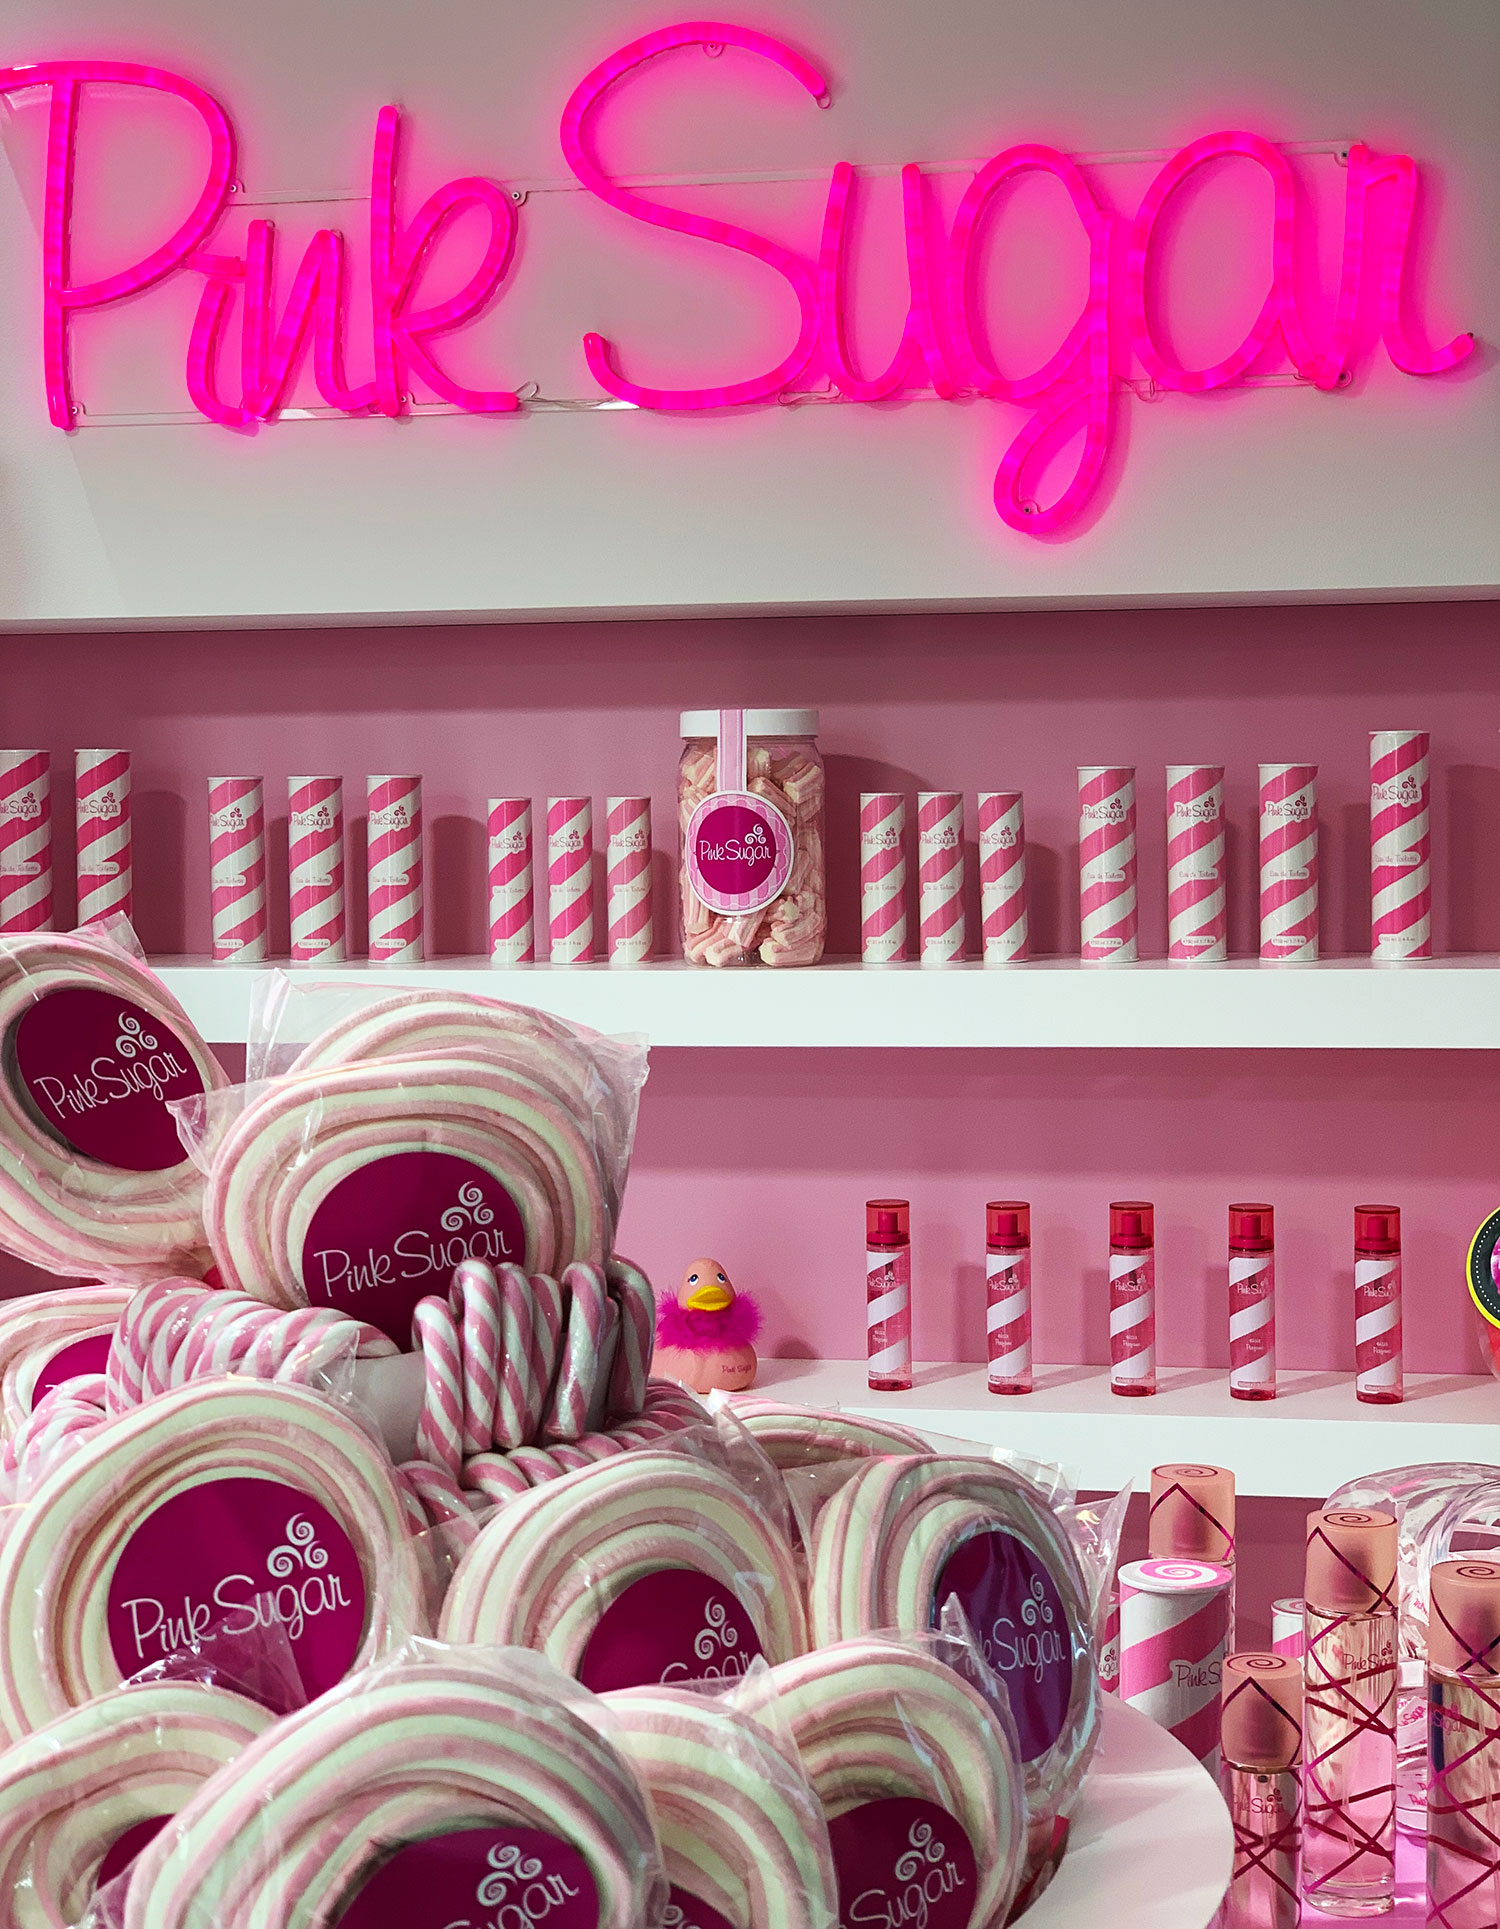 pink sugar booth at tfwa 2019.